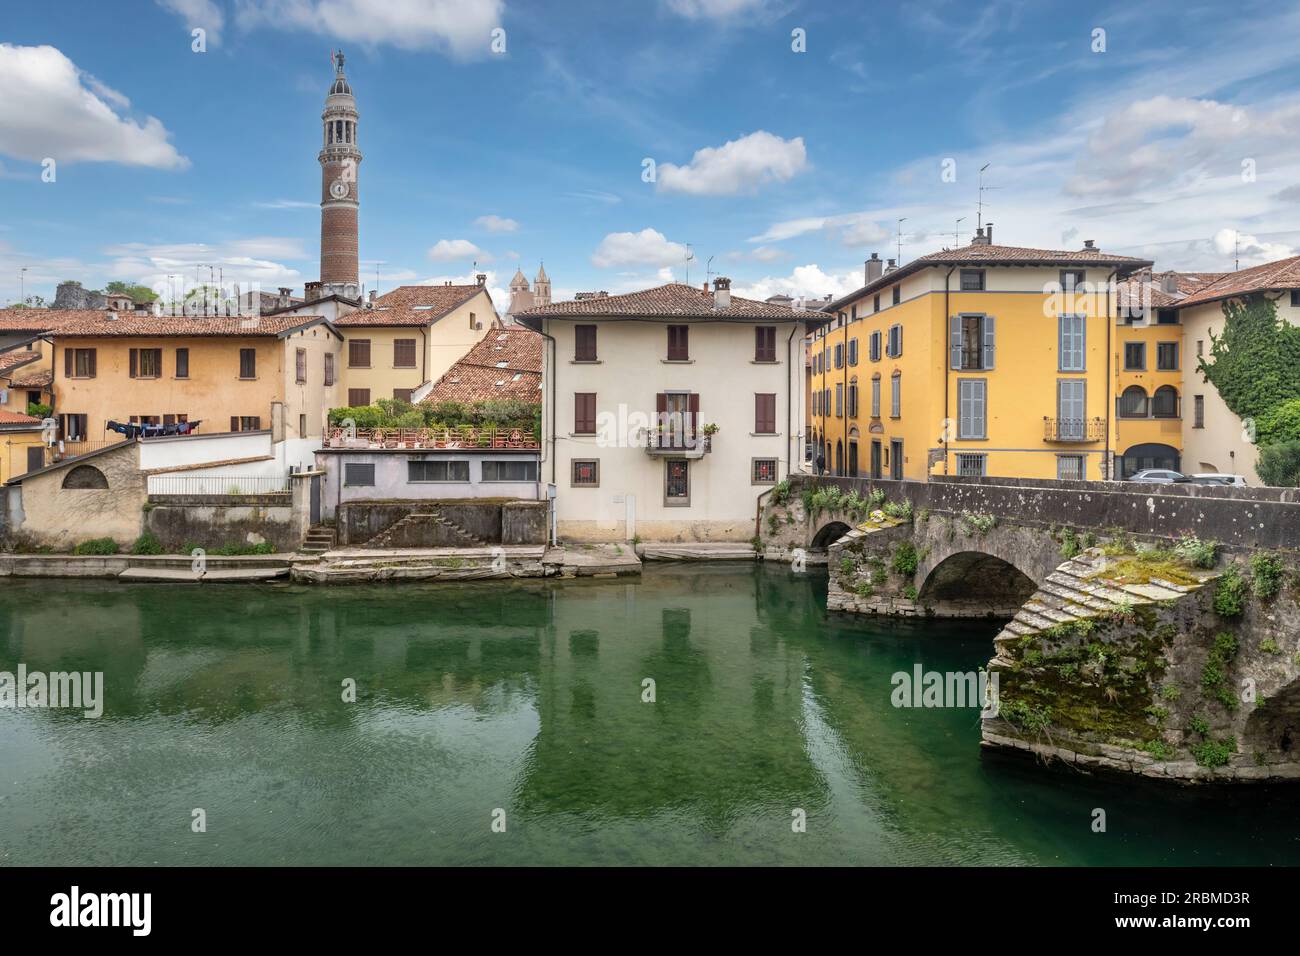 Palazzolo sull'Oglio, Italien - Stadtbild mit alter Steinbrücke über den Fluss Oglio Stockfoto